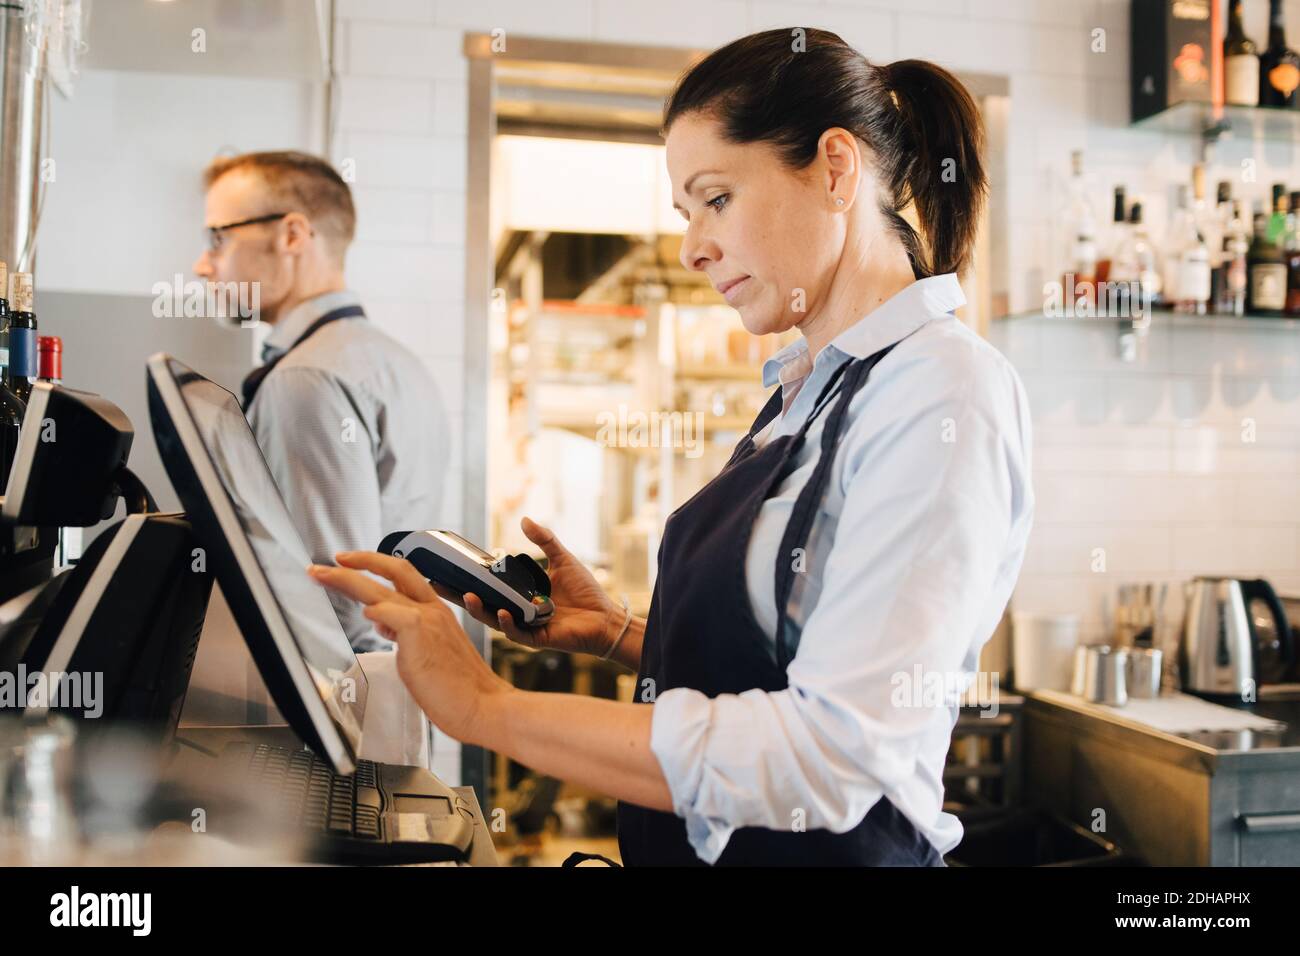 Besitzer mit Computer, während die Kreditkarte Leser im Restaurant Stockfoto